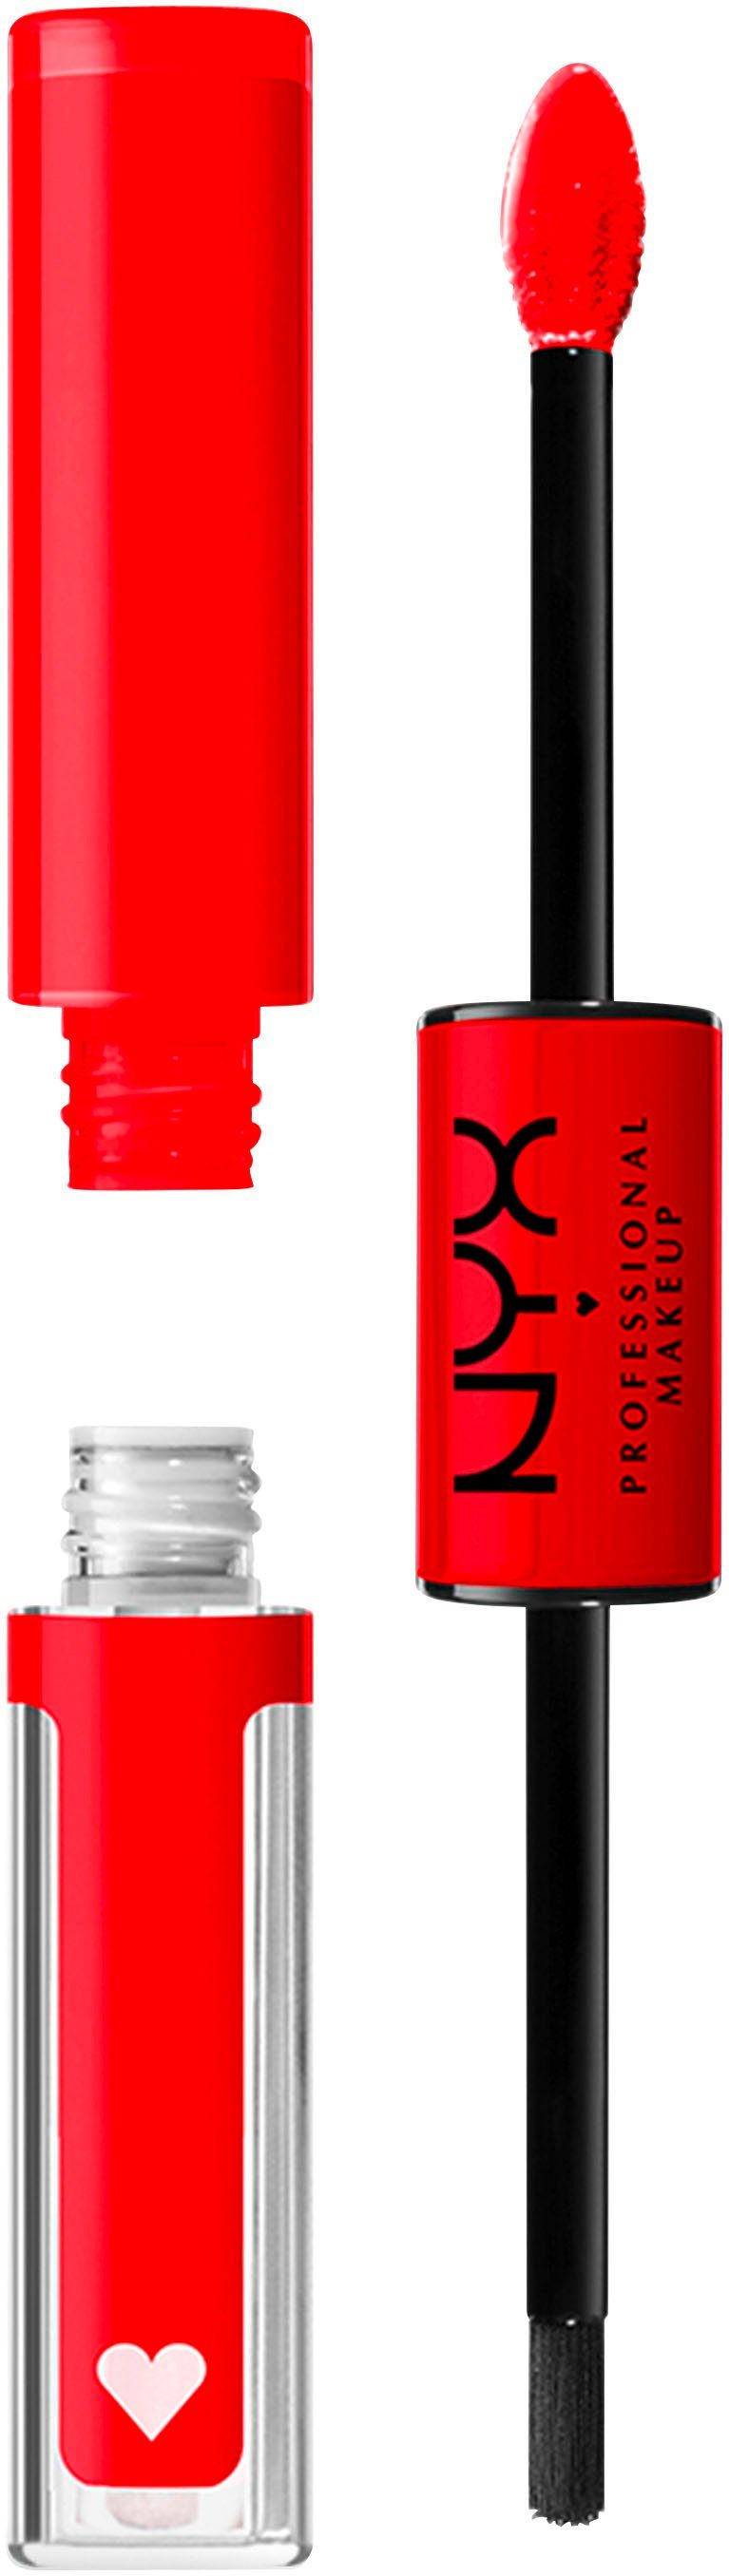 NYX Lippenstift Professional Makeup Shine Loud High Pigment Lip Shine, präziser Auftrag mit geformtem Applikator Rebel In Red | Lippenstifte